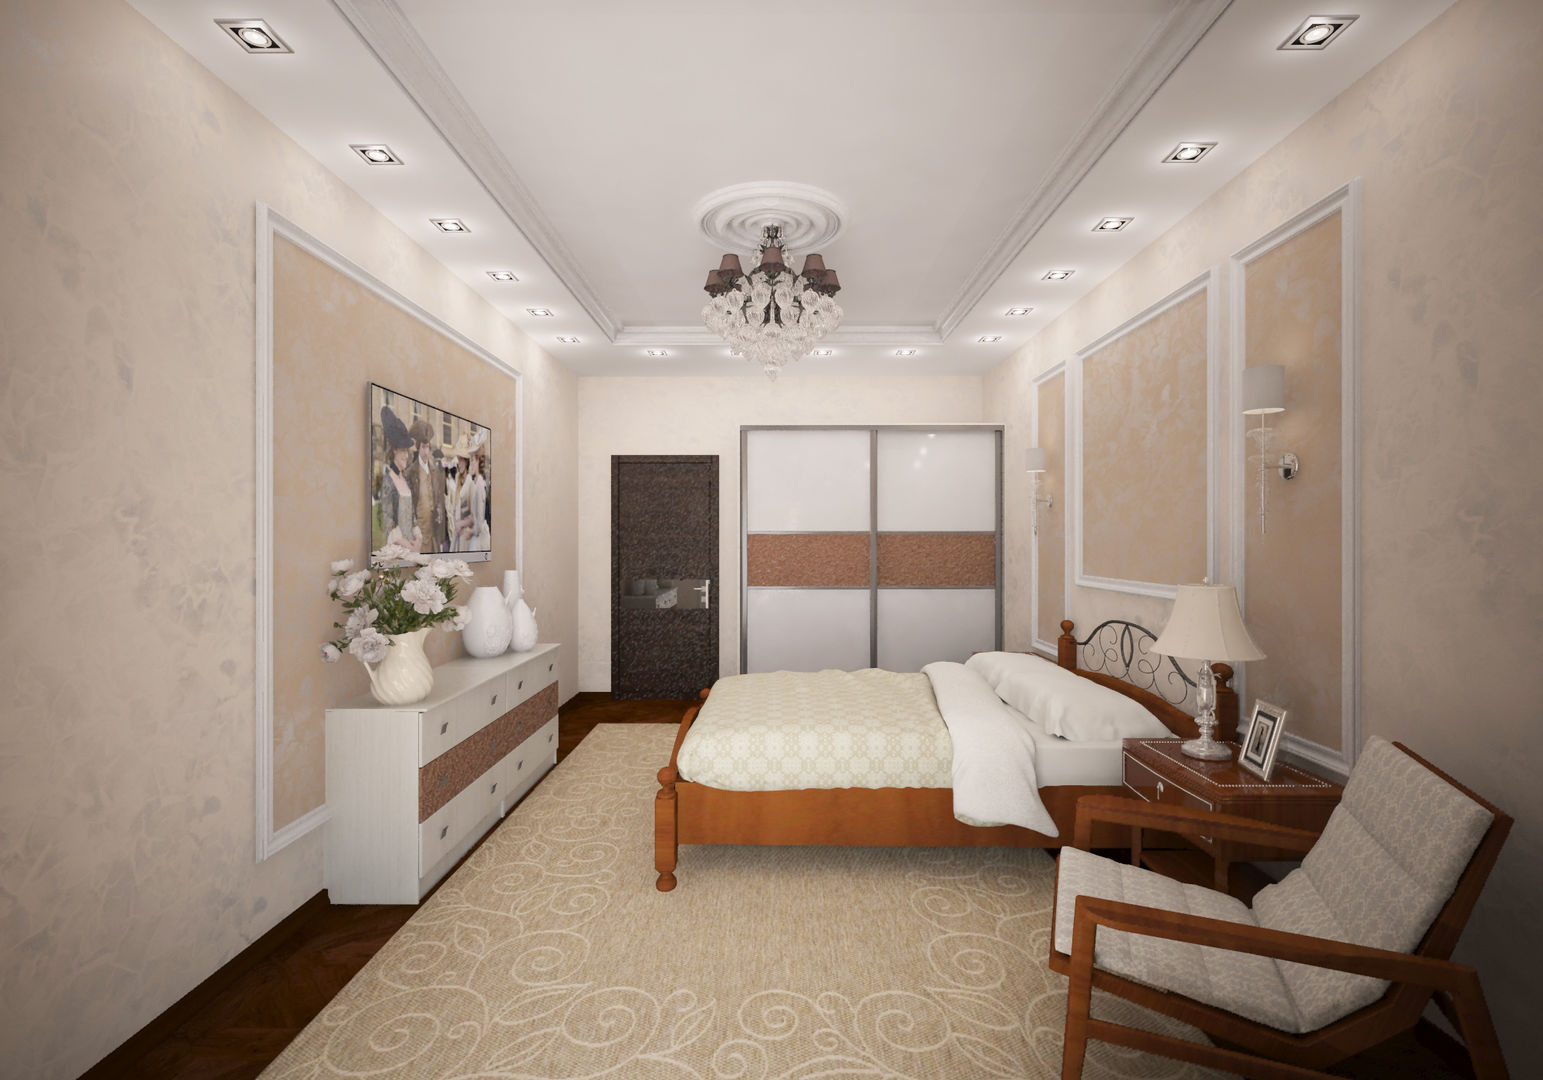 Классическая комната с французским двориком на балконе, Гурьянова Наталья Гурьянова Наталья Bedroom